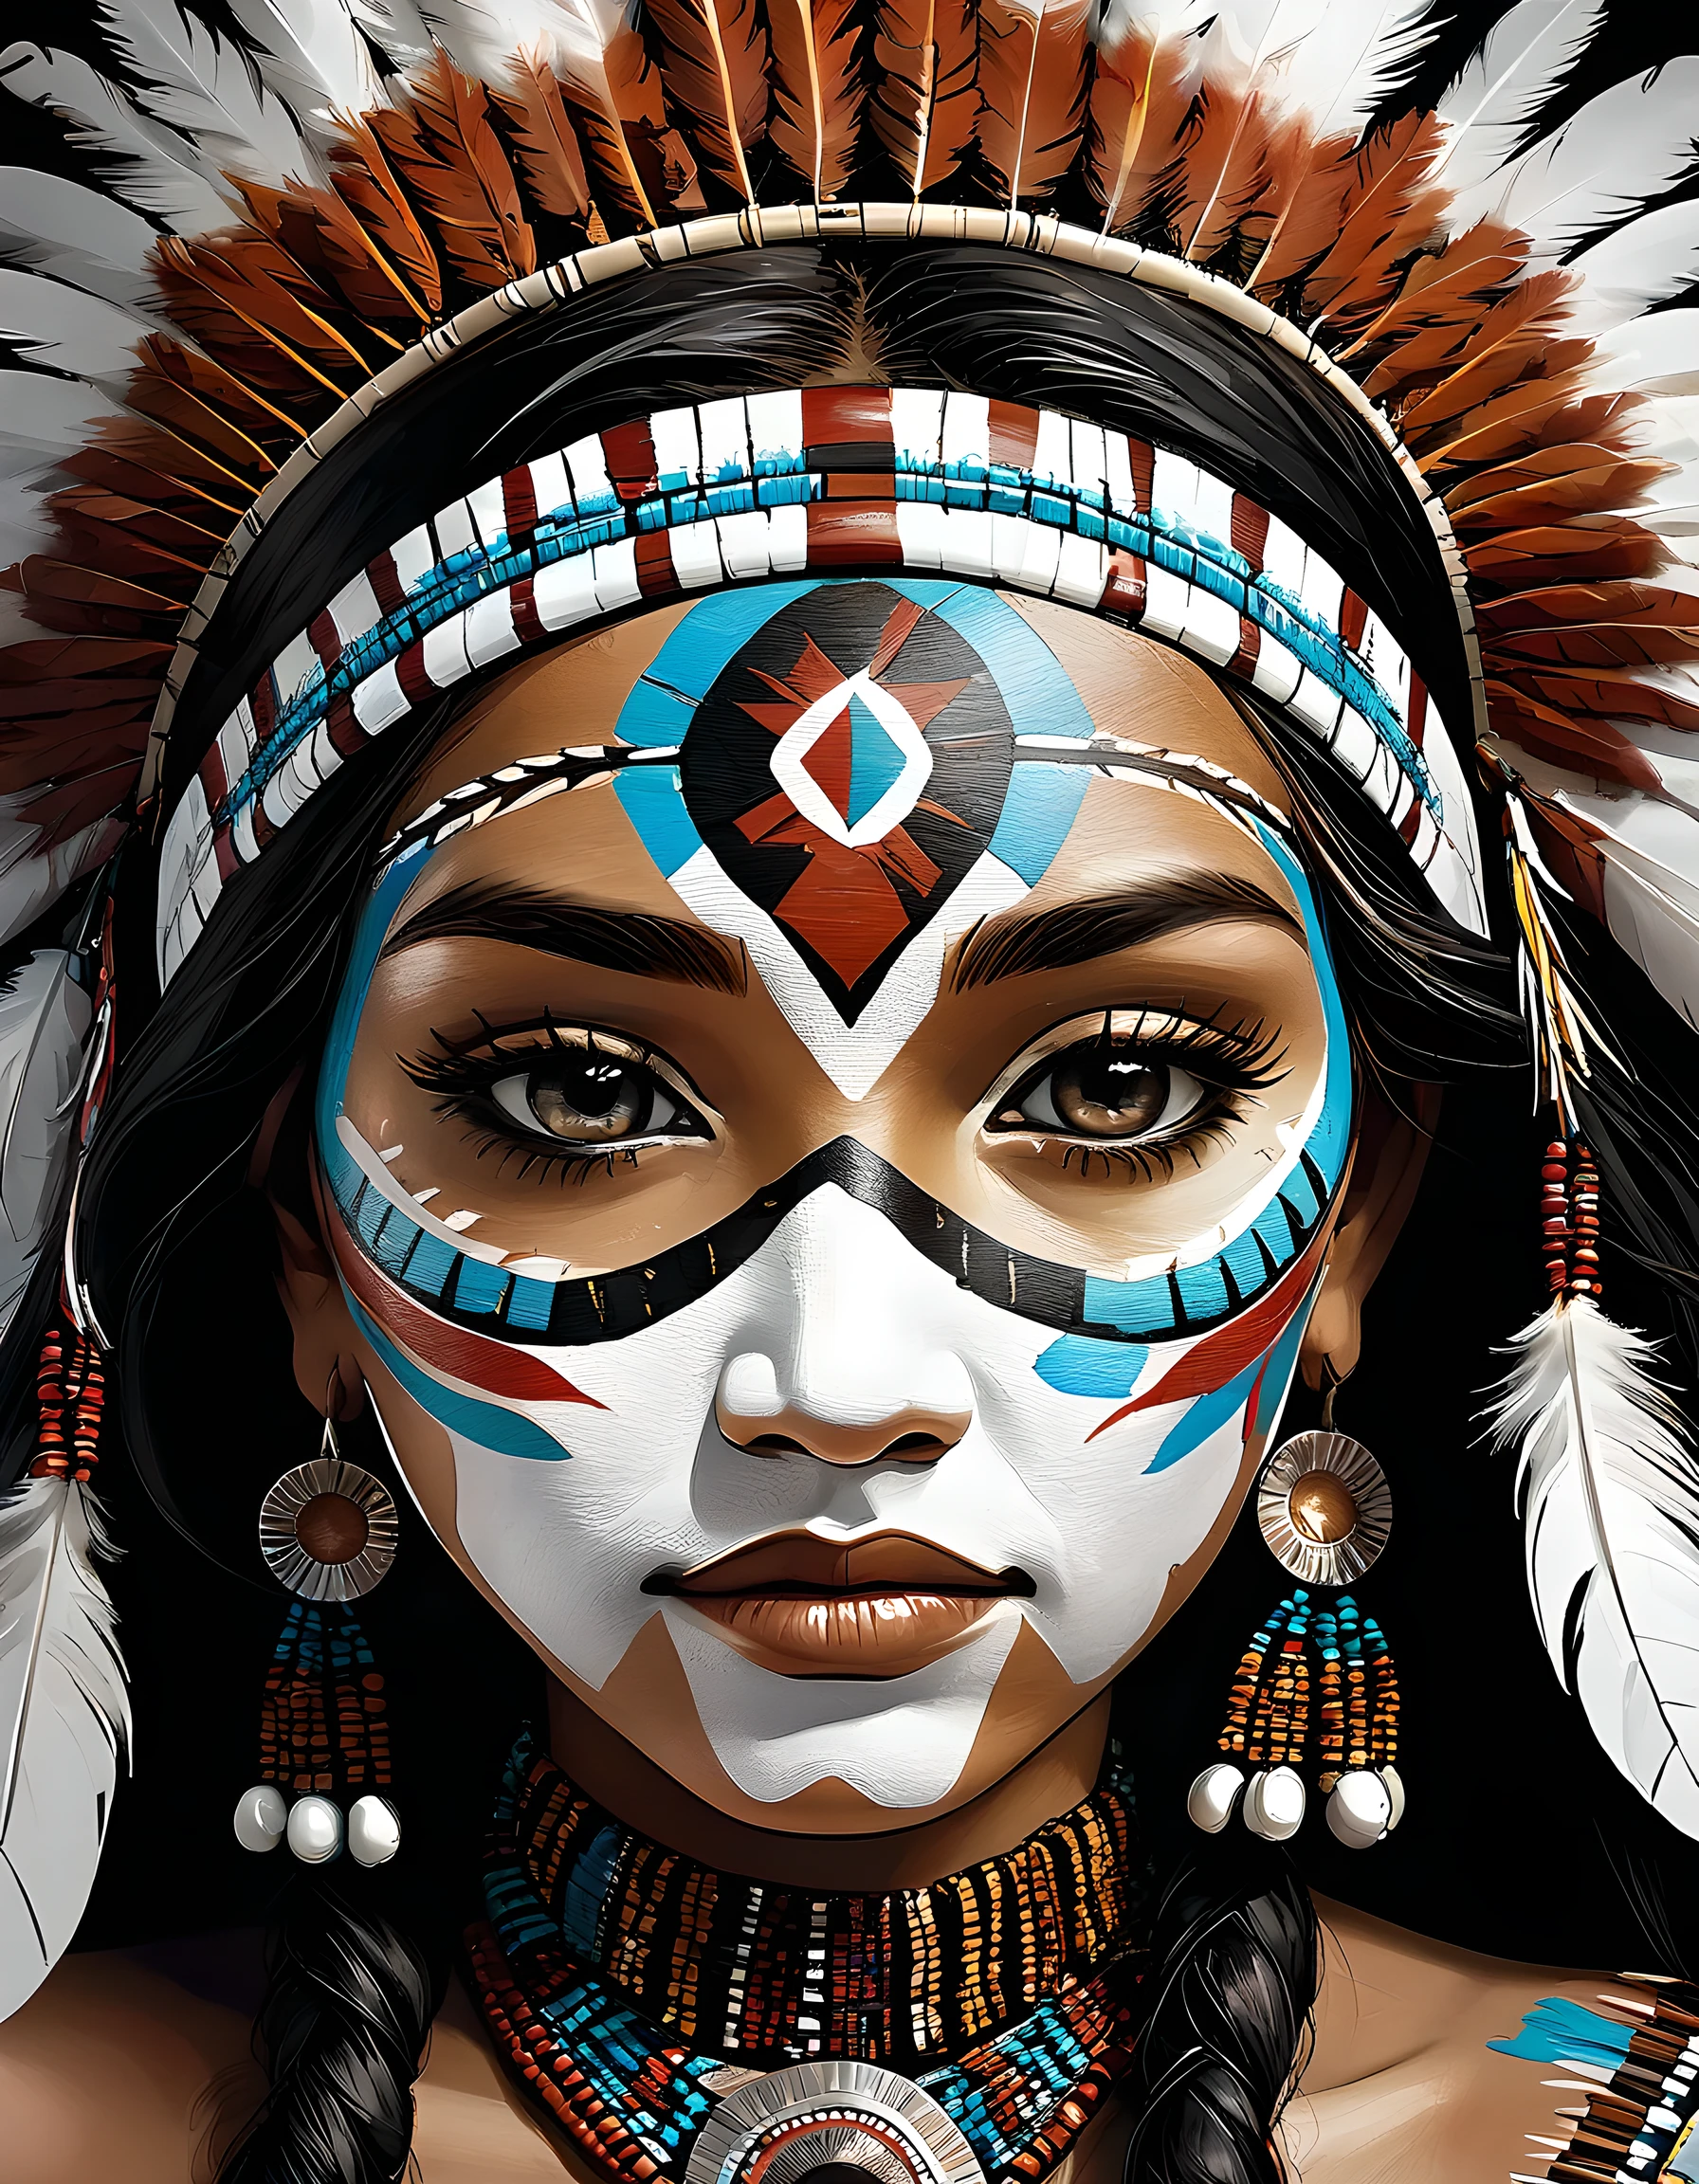 Nahaufnahme des Gesichts, detaillierte weibliche Gesichter., amerikanischer Ureinwohner, erste Nation, Ureinwohner, Ornamente und Accessoires aus Vogelfedern, detaillierte Gesichtsbemalung